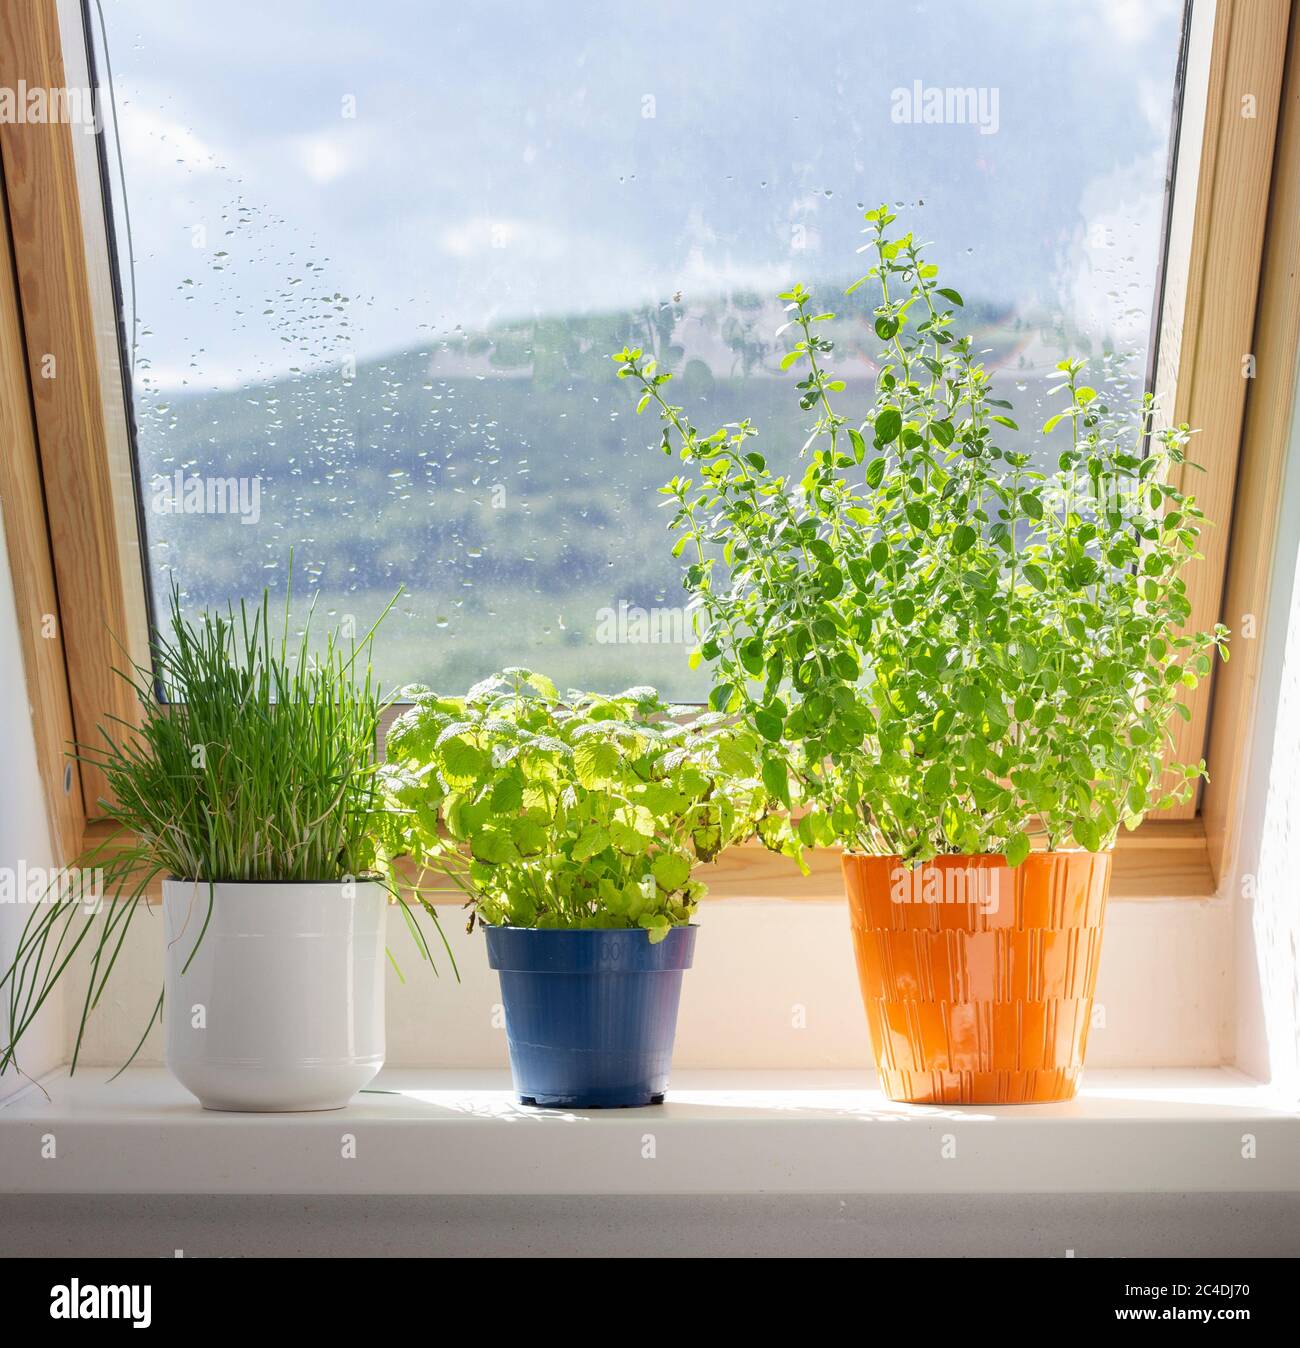 hierbas creciendo en ollas en el alféizar de la ventana Foto de stock